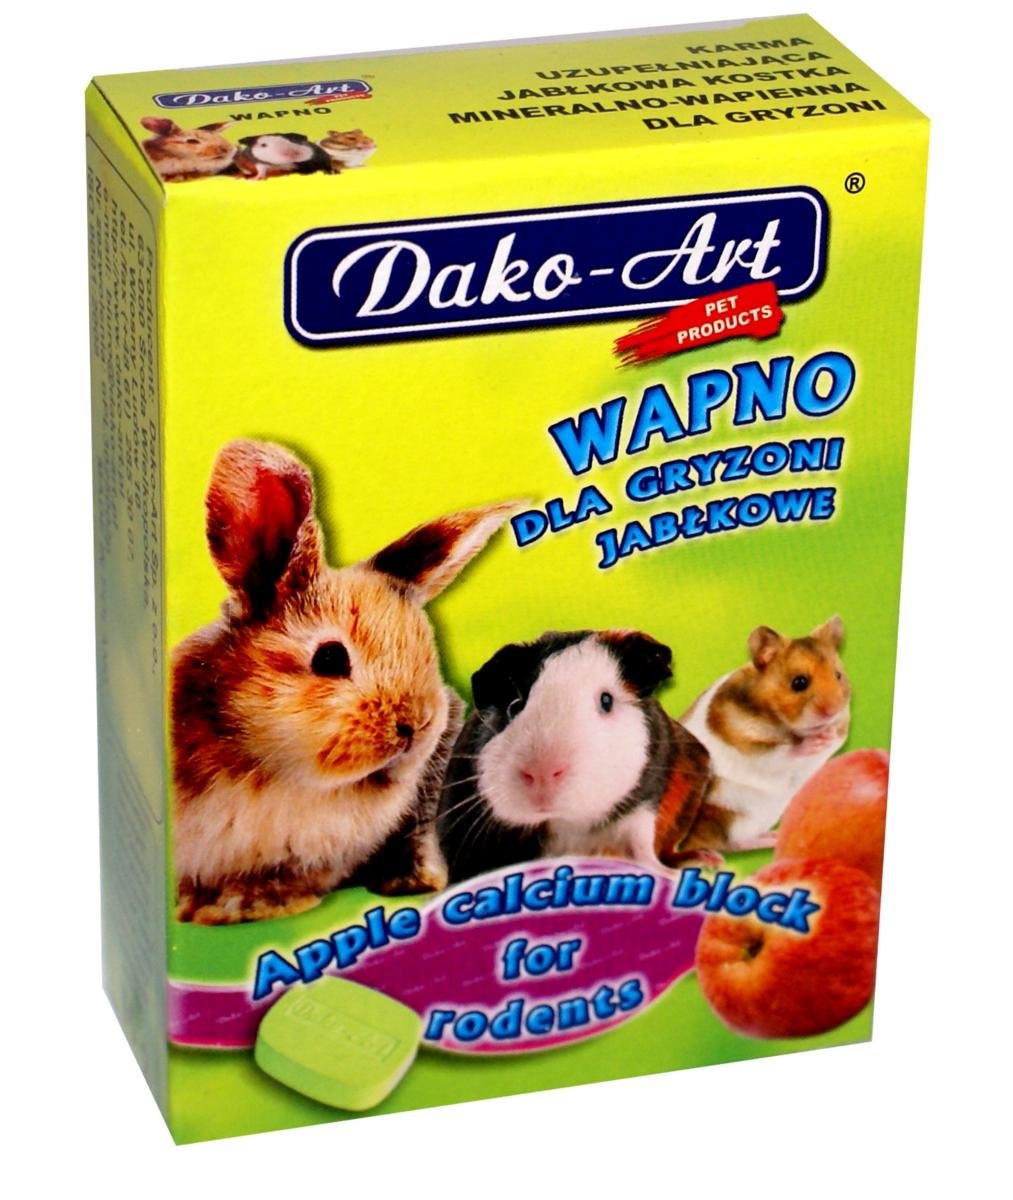 Dako-Art Wapno jabłkowe dla gryzoni 1szt